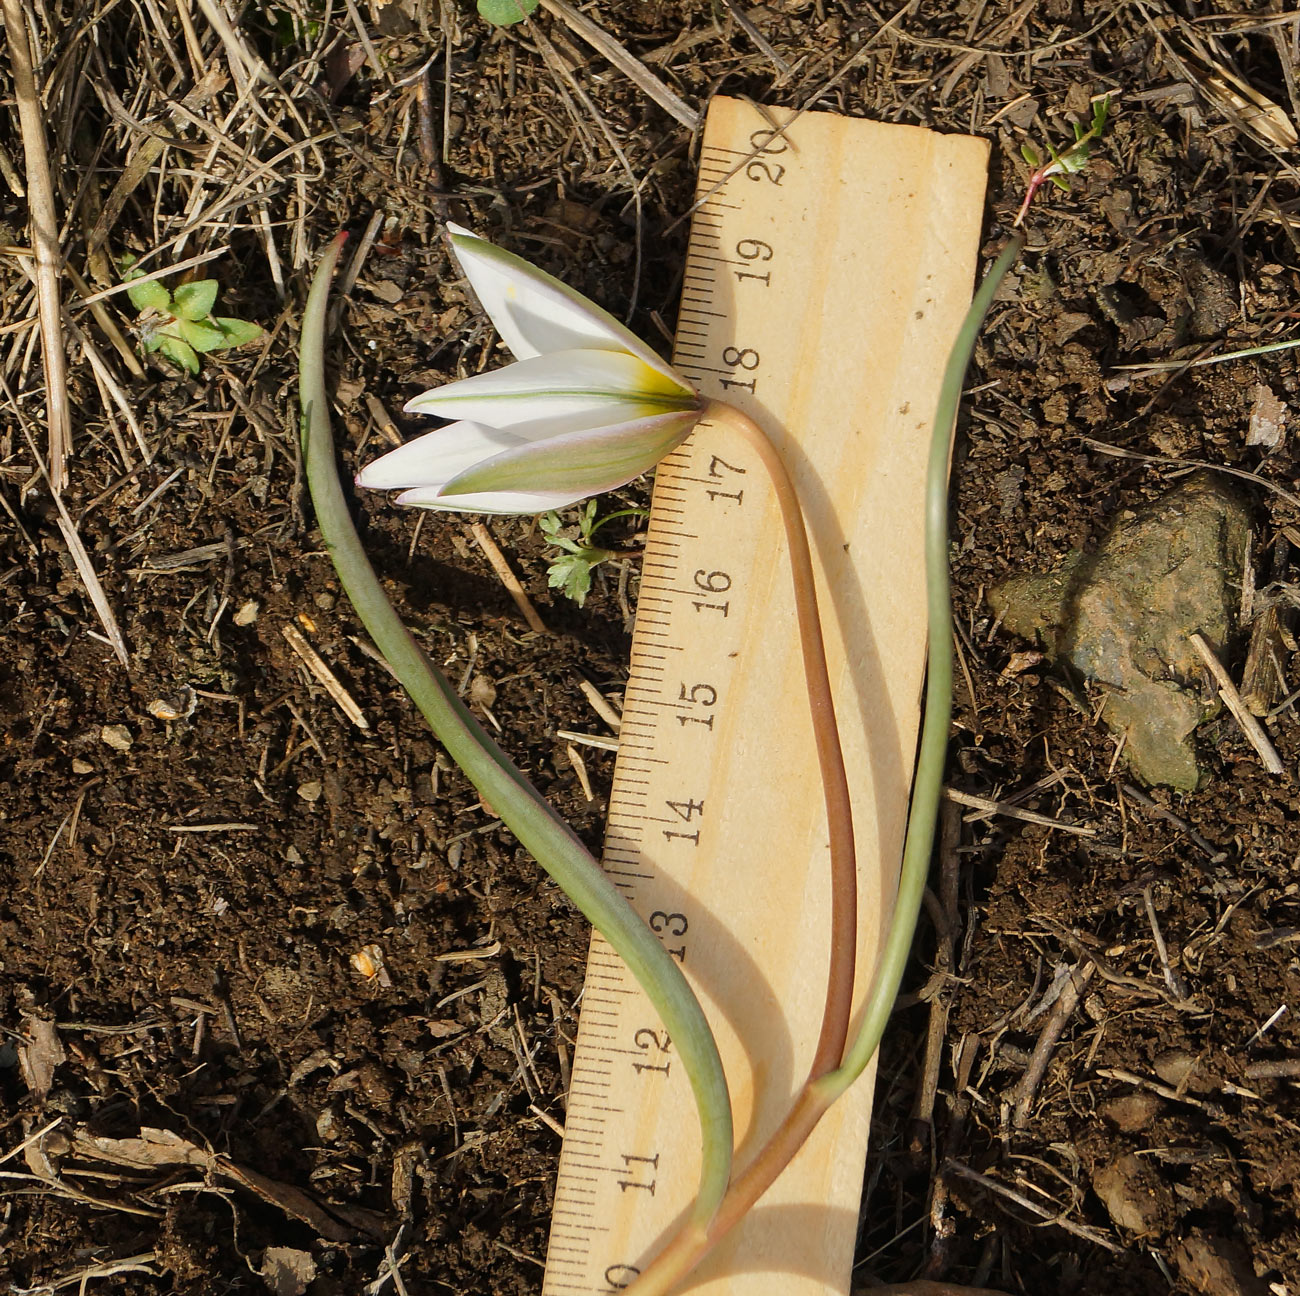 Image of Tulipa patens specimen.